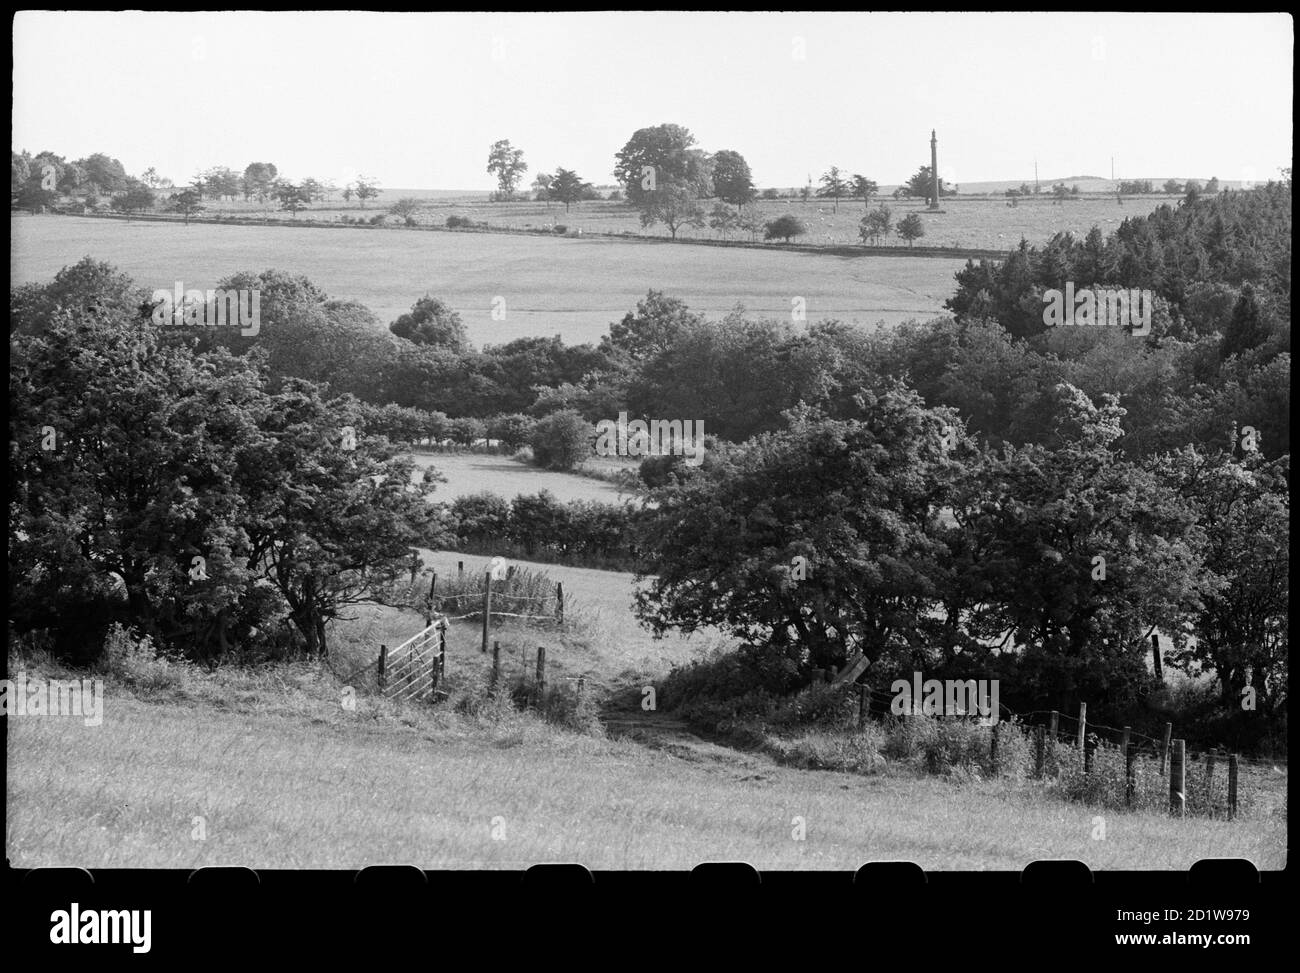 Vista di una colonna commemorativa circa 400 m a sud di Lemmington Hall, originariamente eretta nel 1786 in Surrey da Sir John Soane e ri-locata in Northumberland nel 1928, visto in lontananza con campi e fogliame in primo piano. Foto Stock